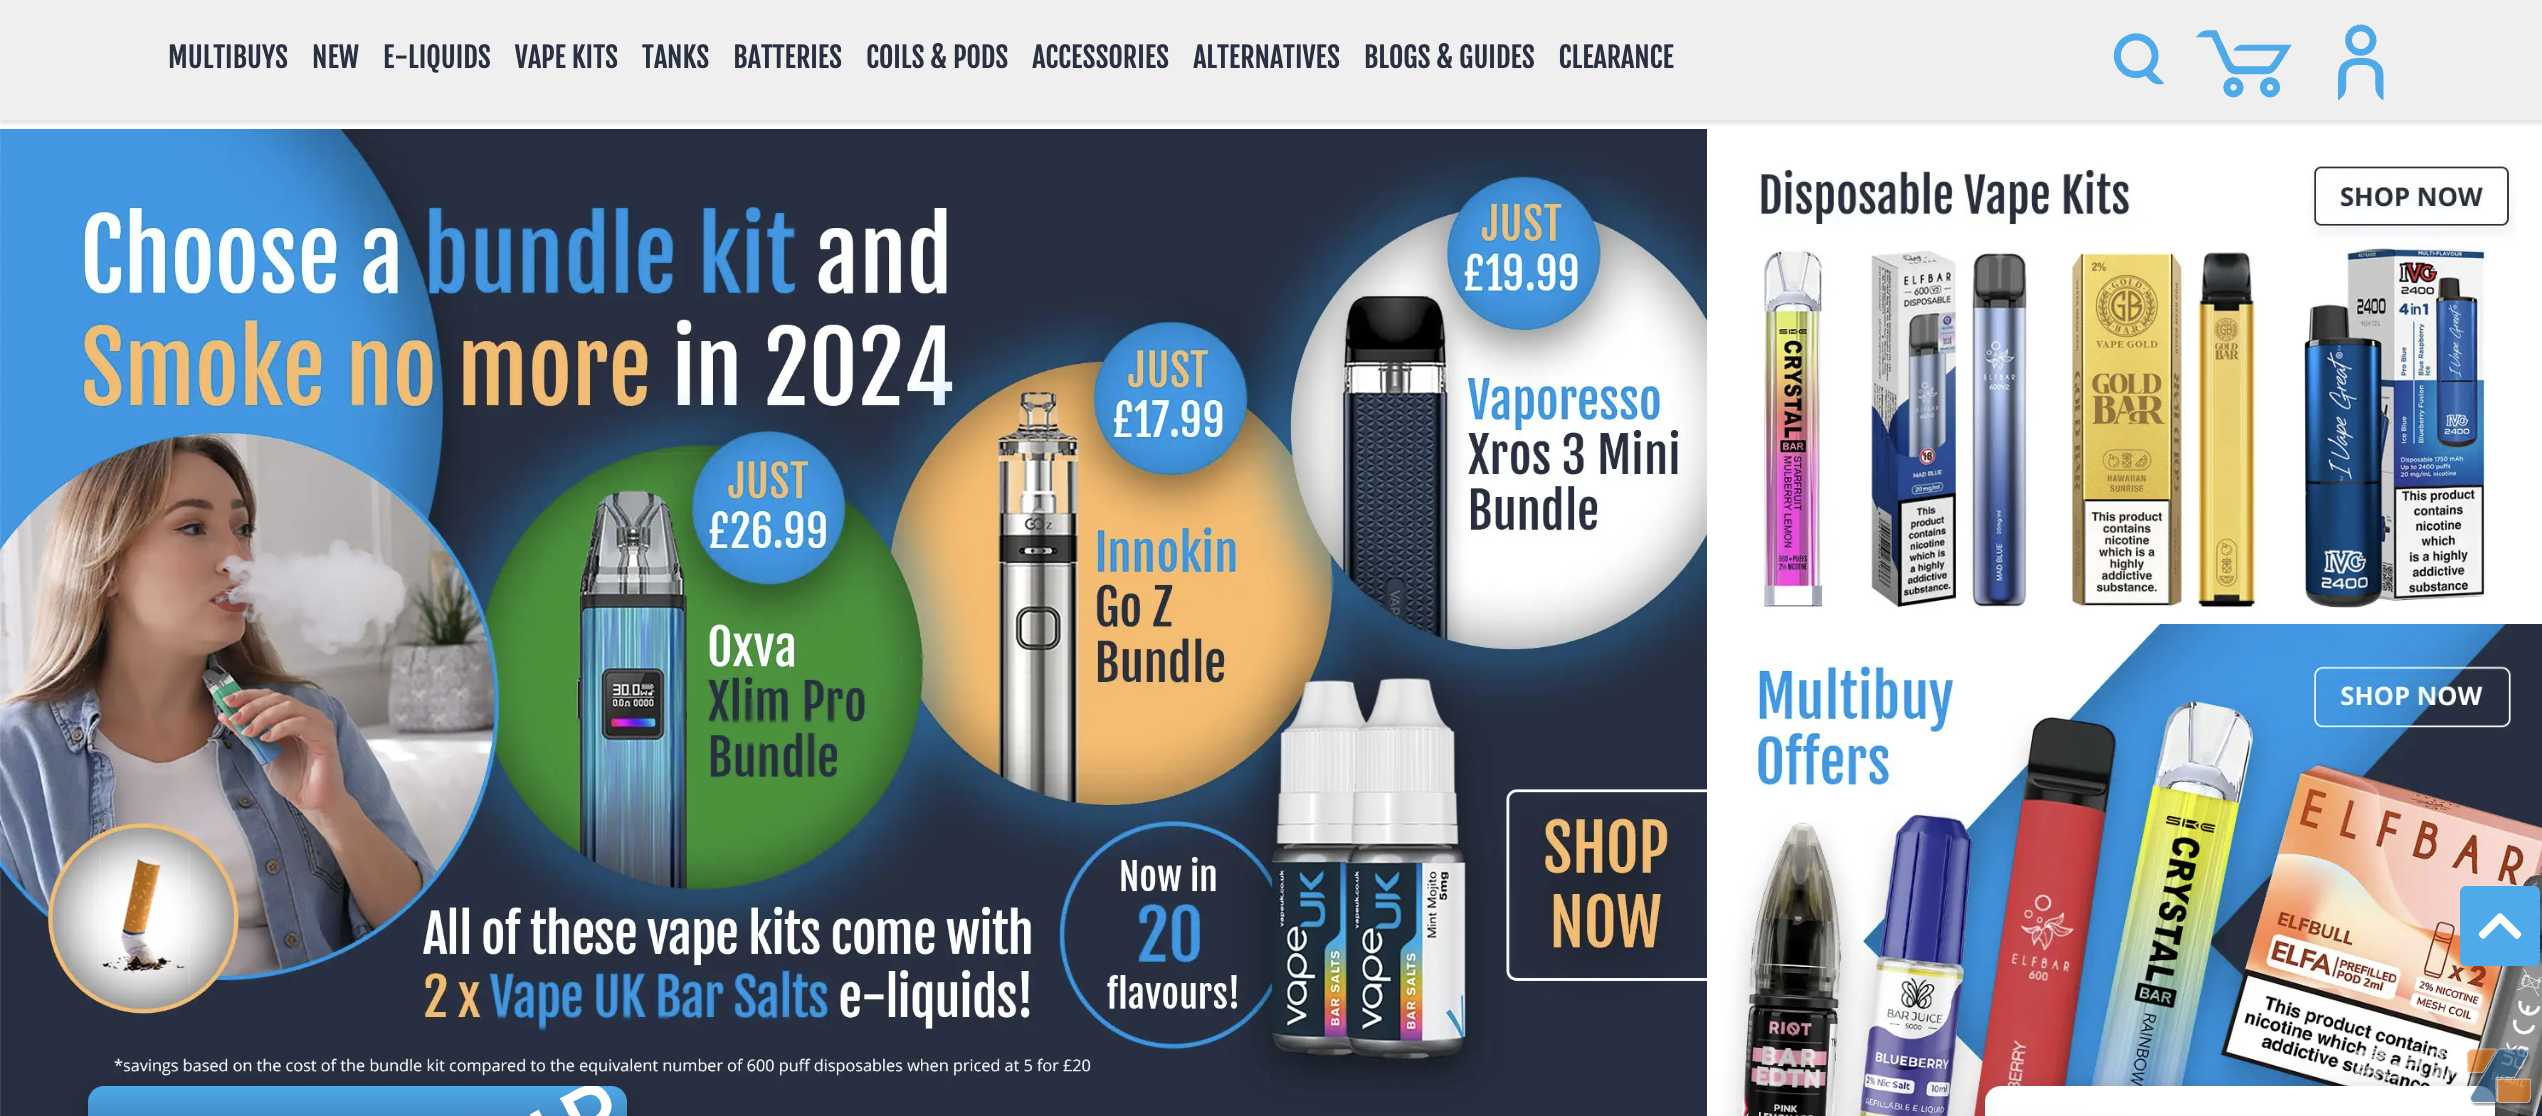 英国宣布禁售一次性后：零售商抛售库存 大型经销商主推烟油与开放式